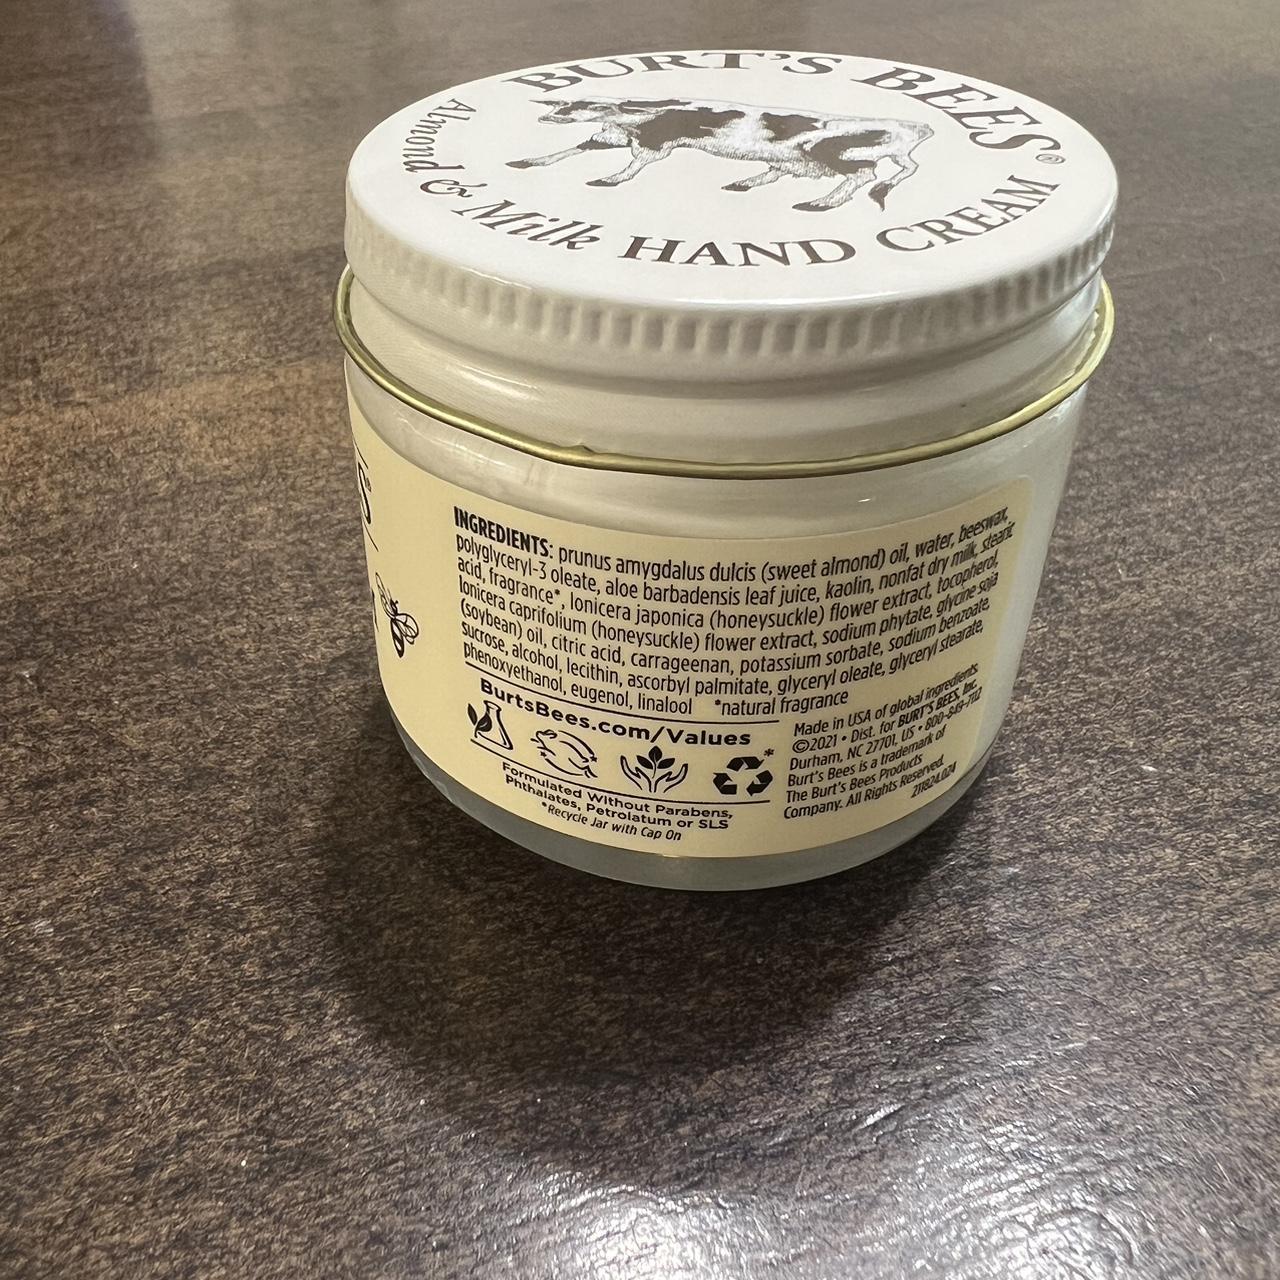 Burt's Bees Cream and White Skincare (2)